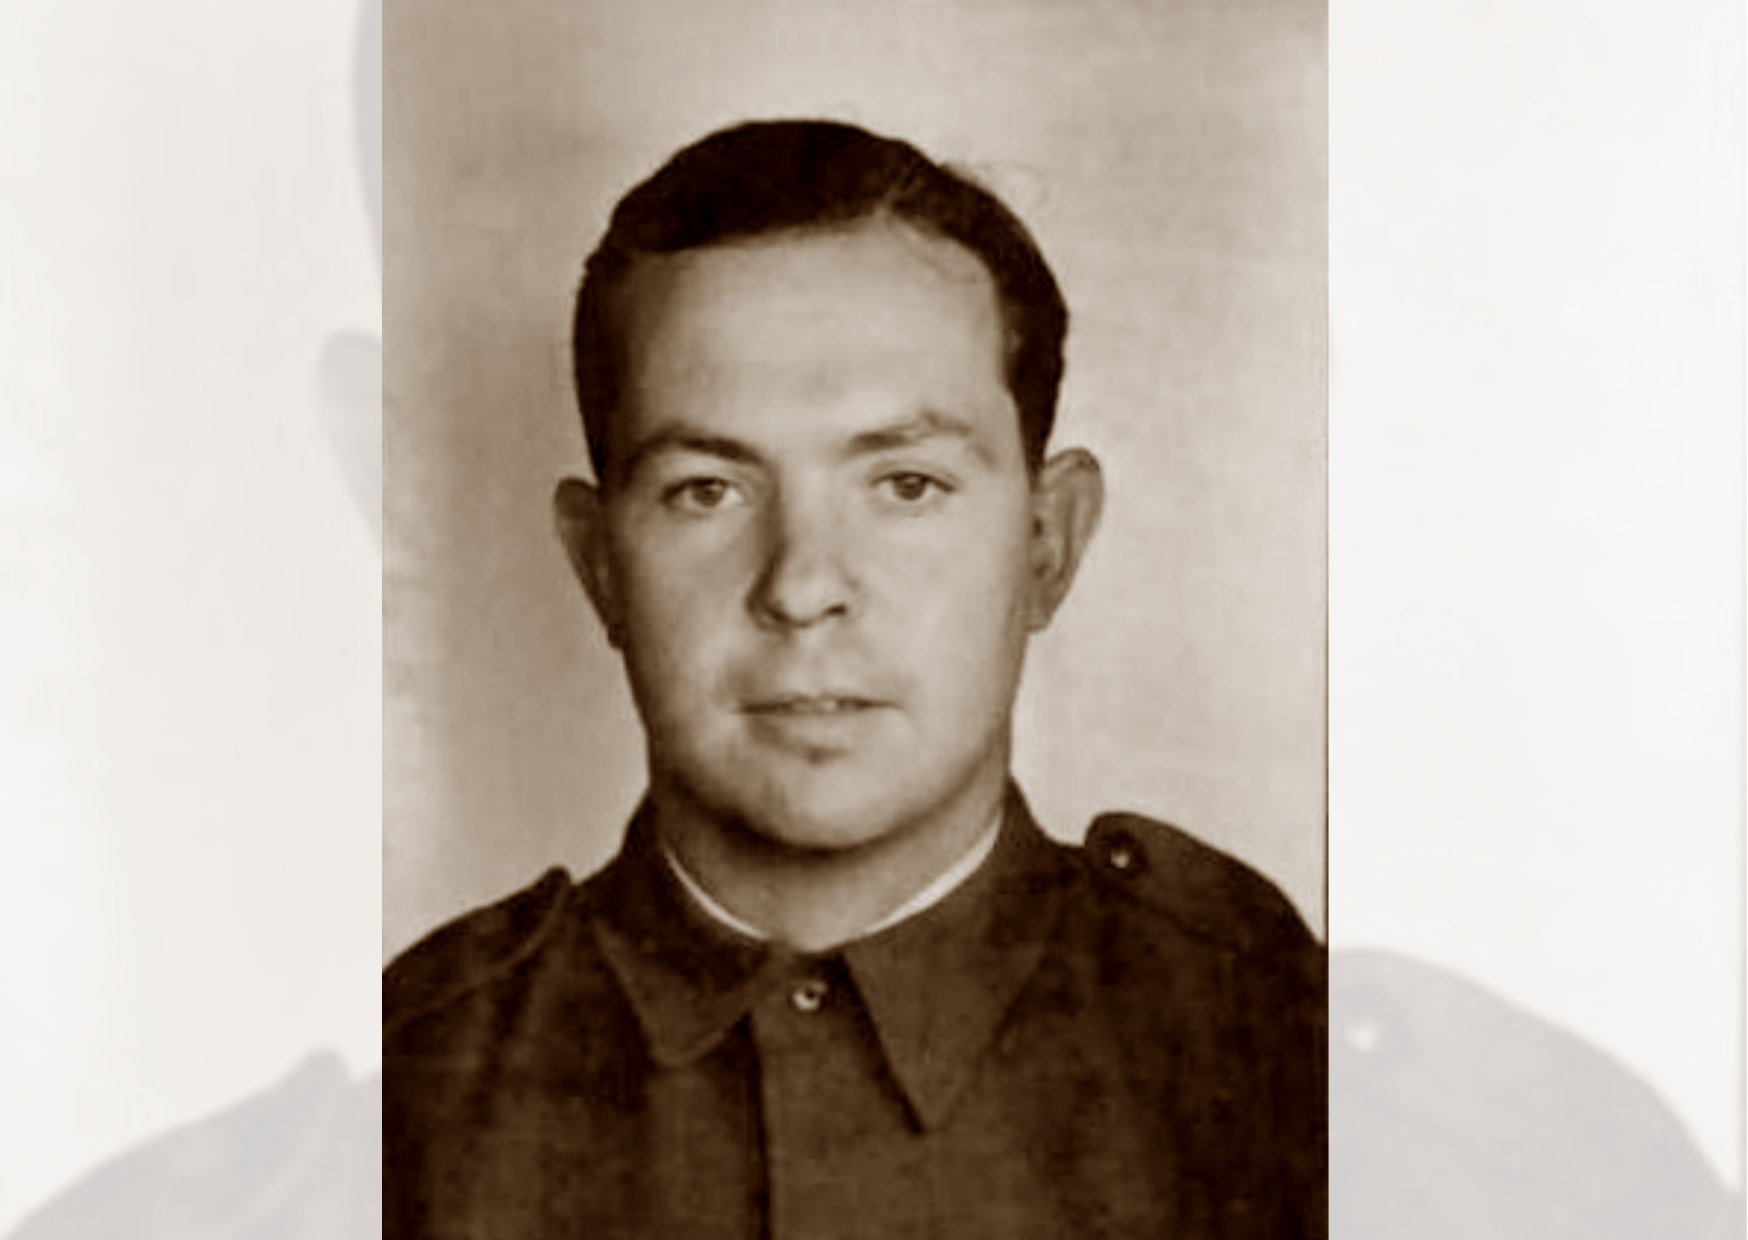 Narrabri-born Haig ‘Jock’ Logan’s diary sheds light on World War II service